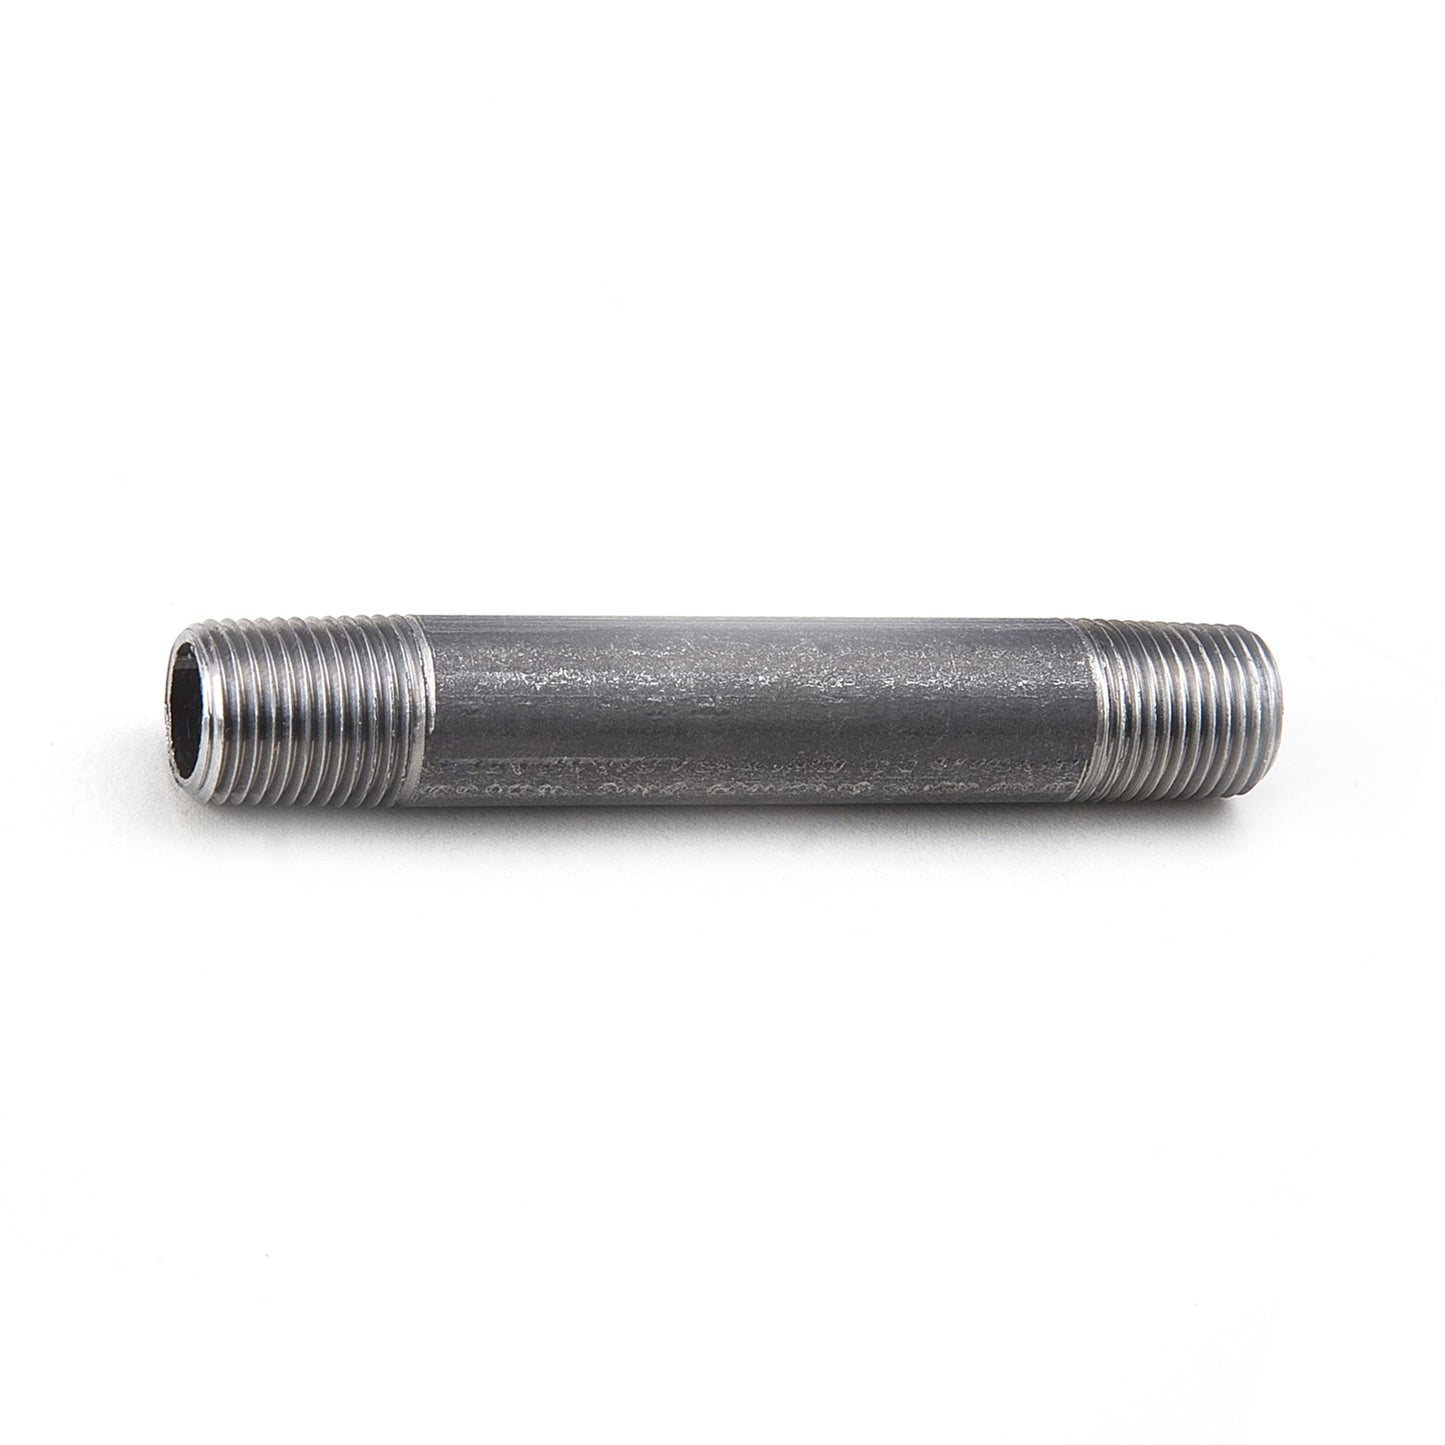 NXBS085 - Schedule 80 Black Seamless Steel Pipe Nipple - 2" X 5"